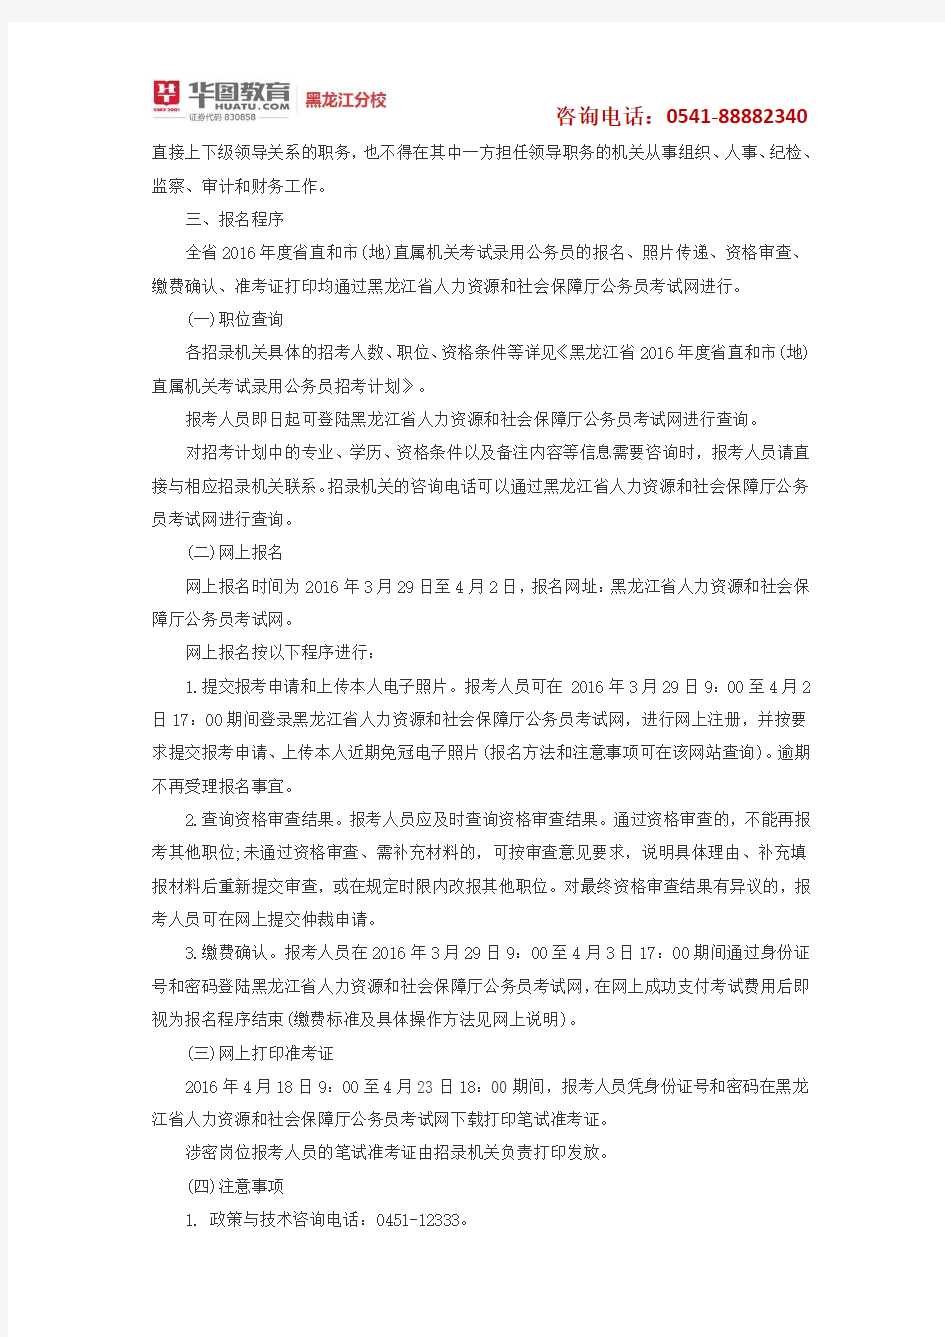 2017年黑龙江公务员考试招考公告